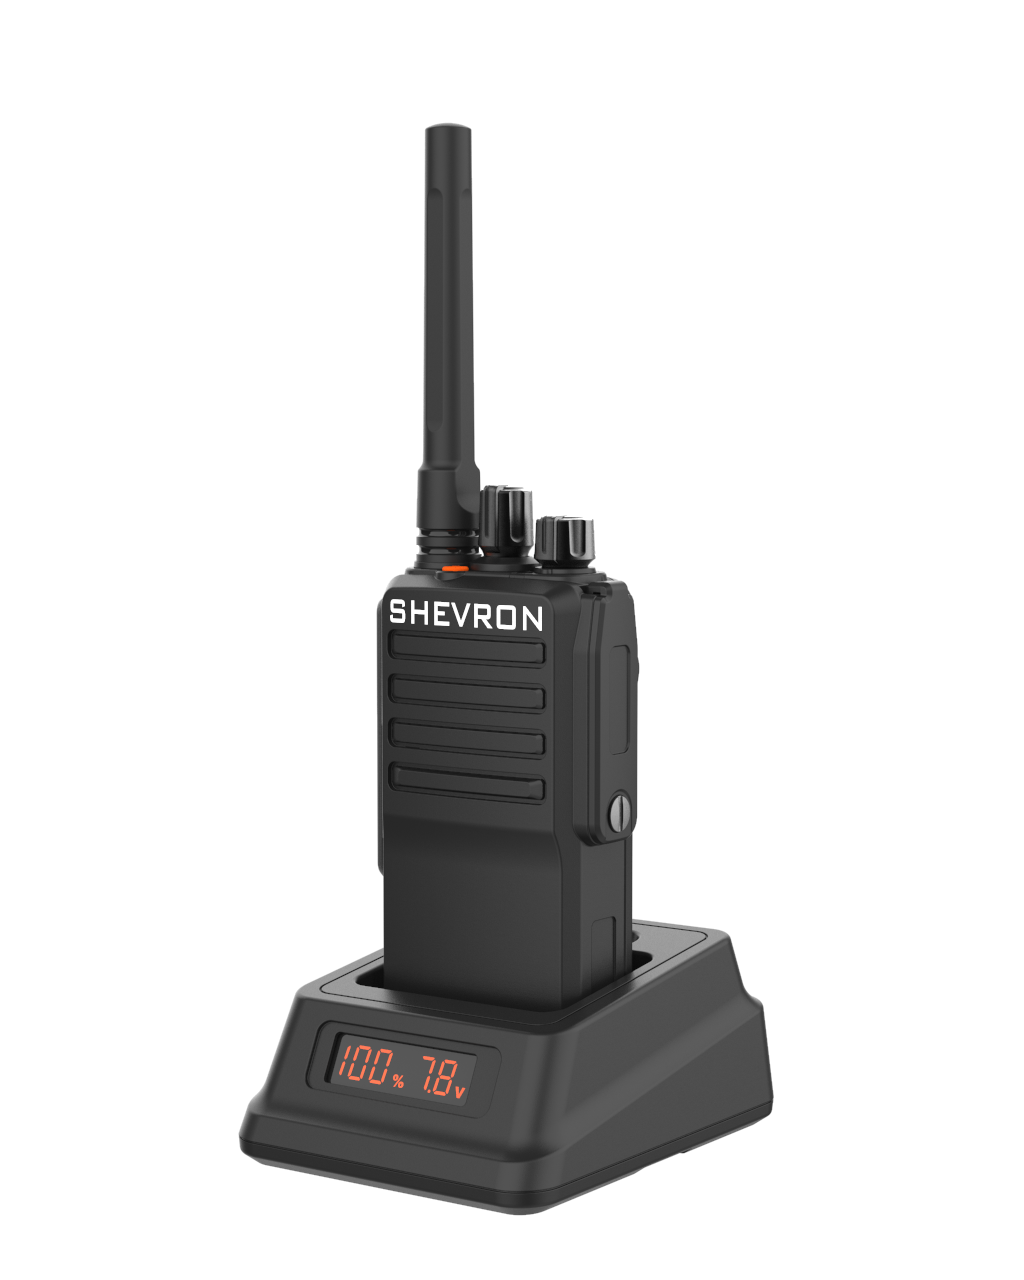 Рация Шеврон T-44 U2 - профессиональная цифровая радиостанция с поддержкой аналогового сигнала, предназначенная для работы в частотном диапазоне 400-470 МГц. 